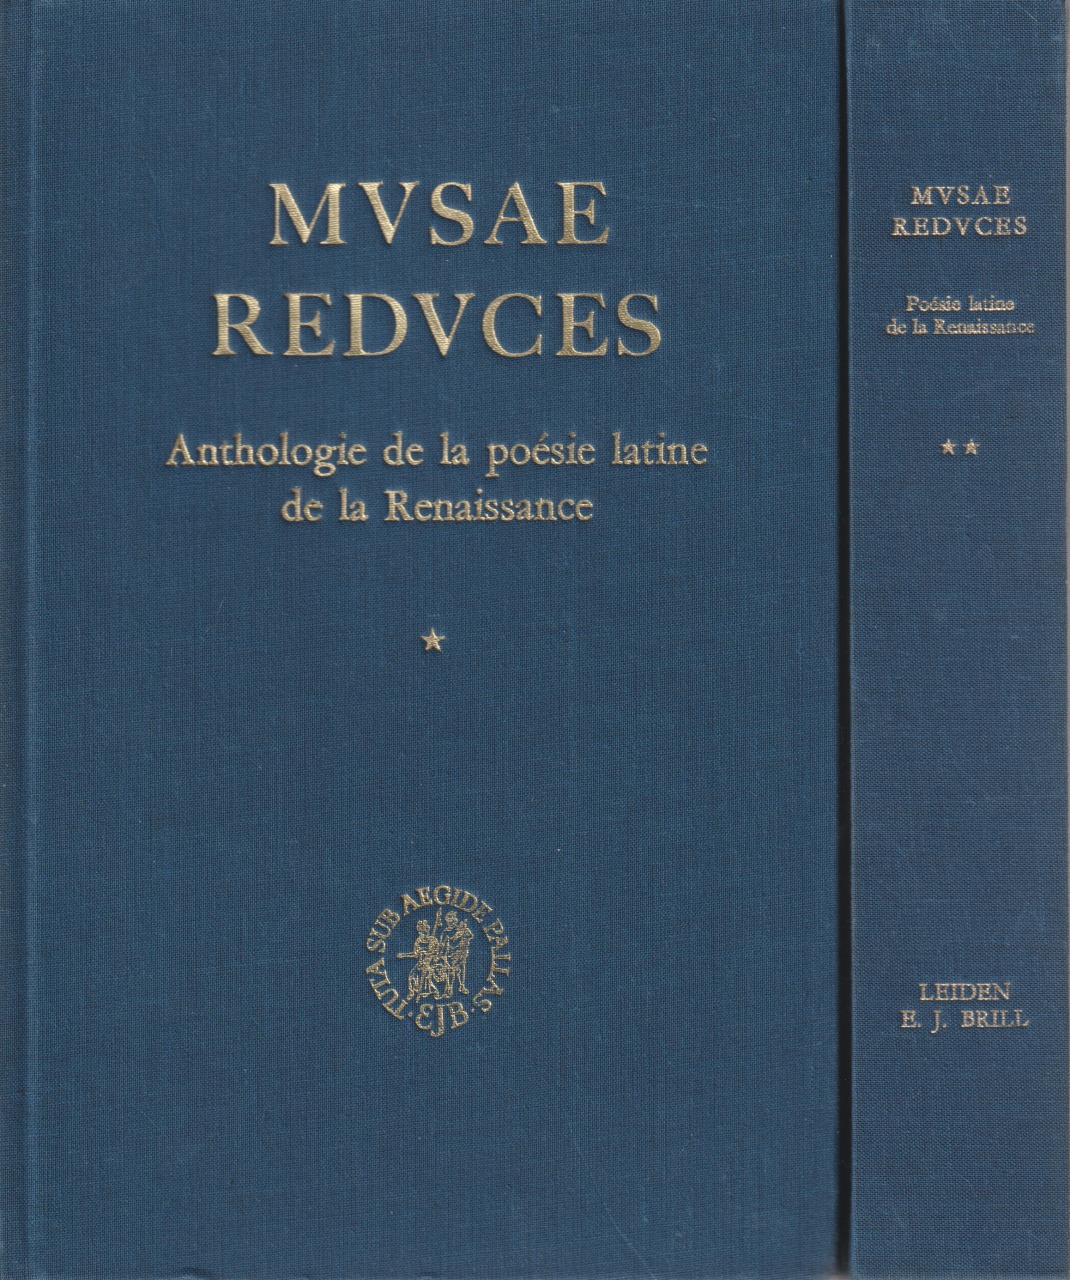 Musae reduces : anthologie de la poesie latine dans l'Europe de la Renaissance, t. 1-2